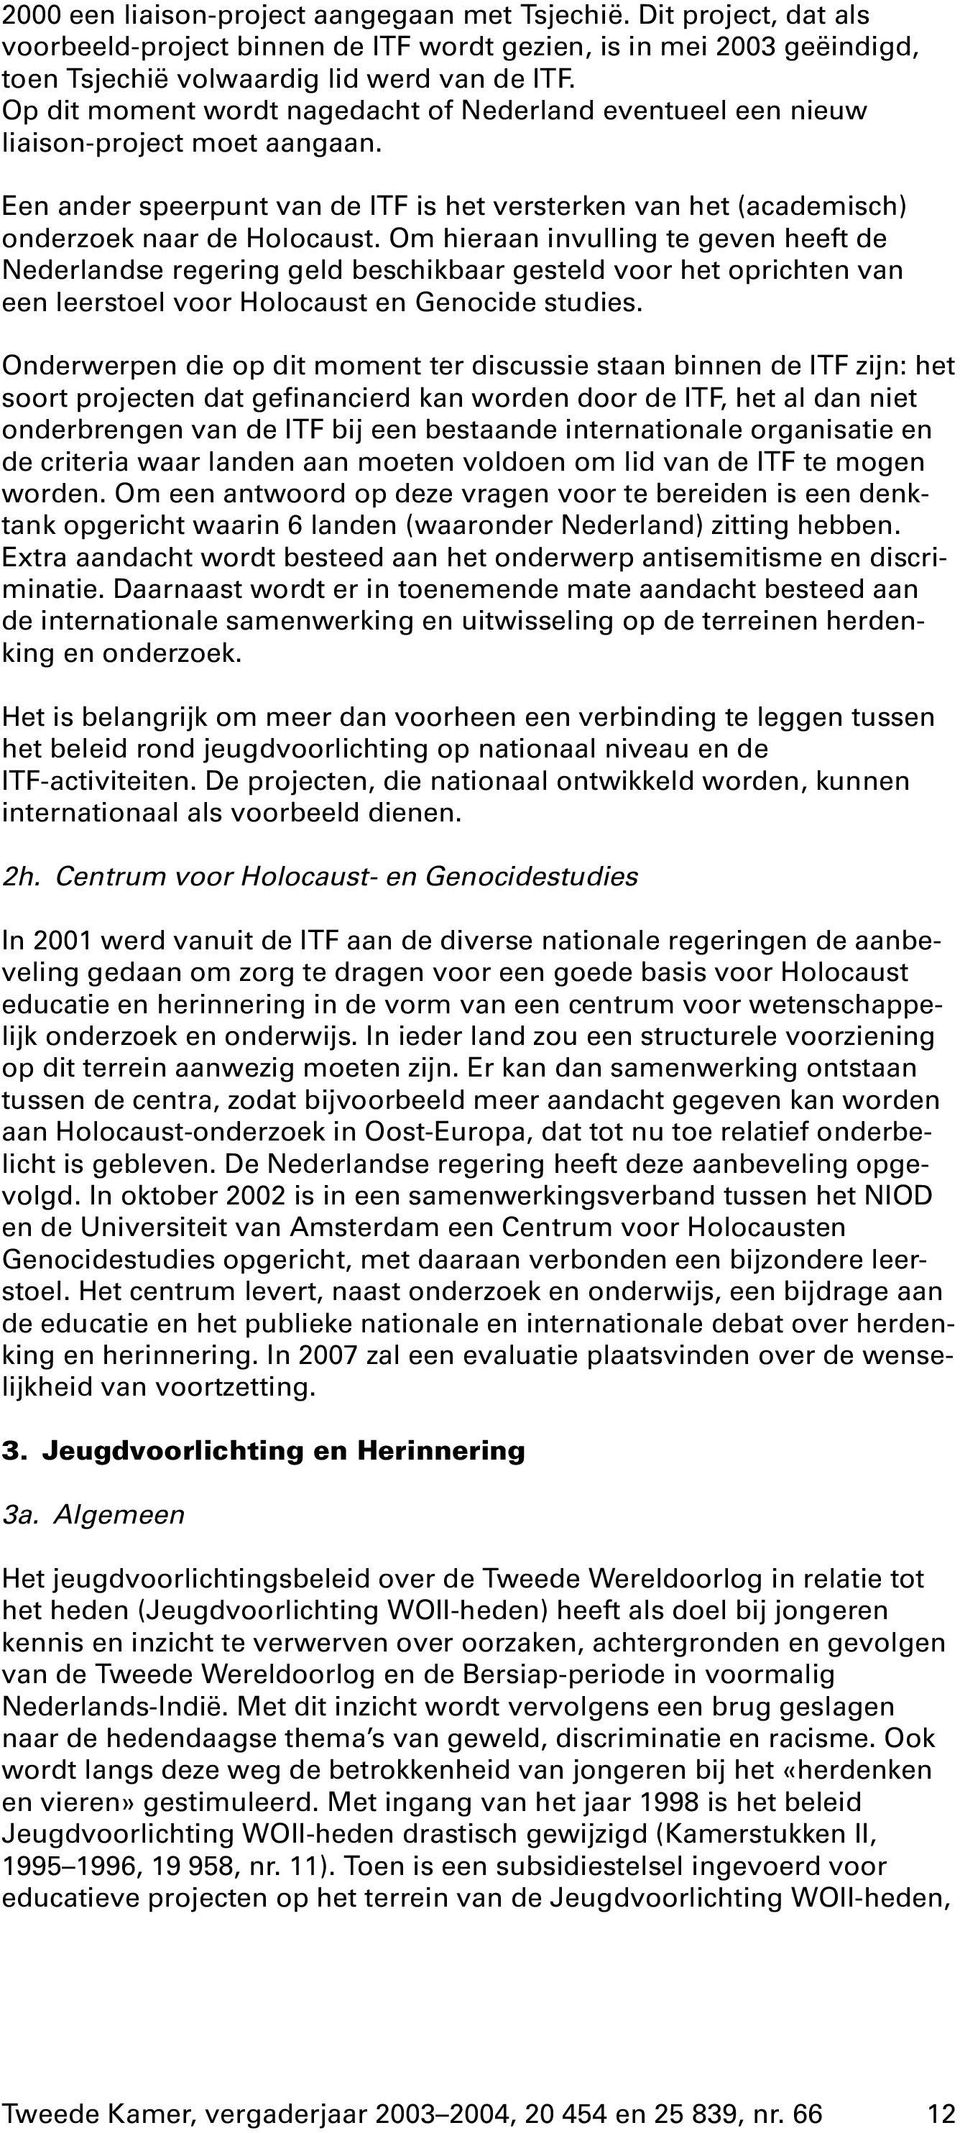 Om hieraan invulling te geven heeft de Nederlandse regering geld beschikbaar gesteld voor het oprichten van een leerstoel voor Holocaust en Genocide studies.